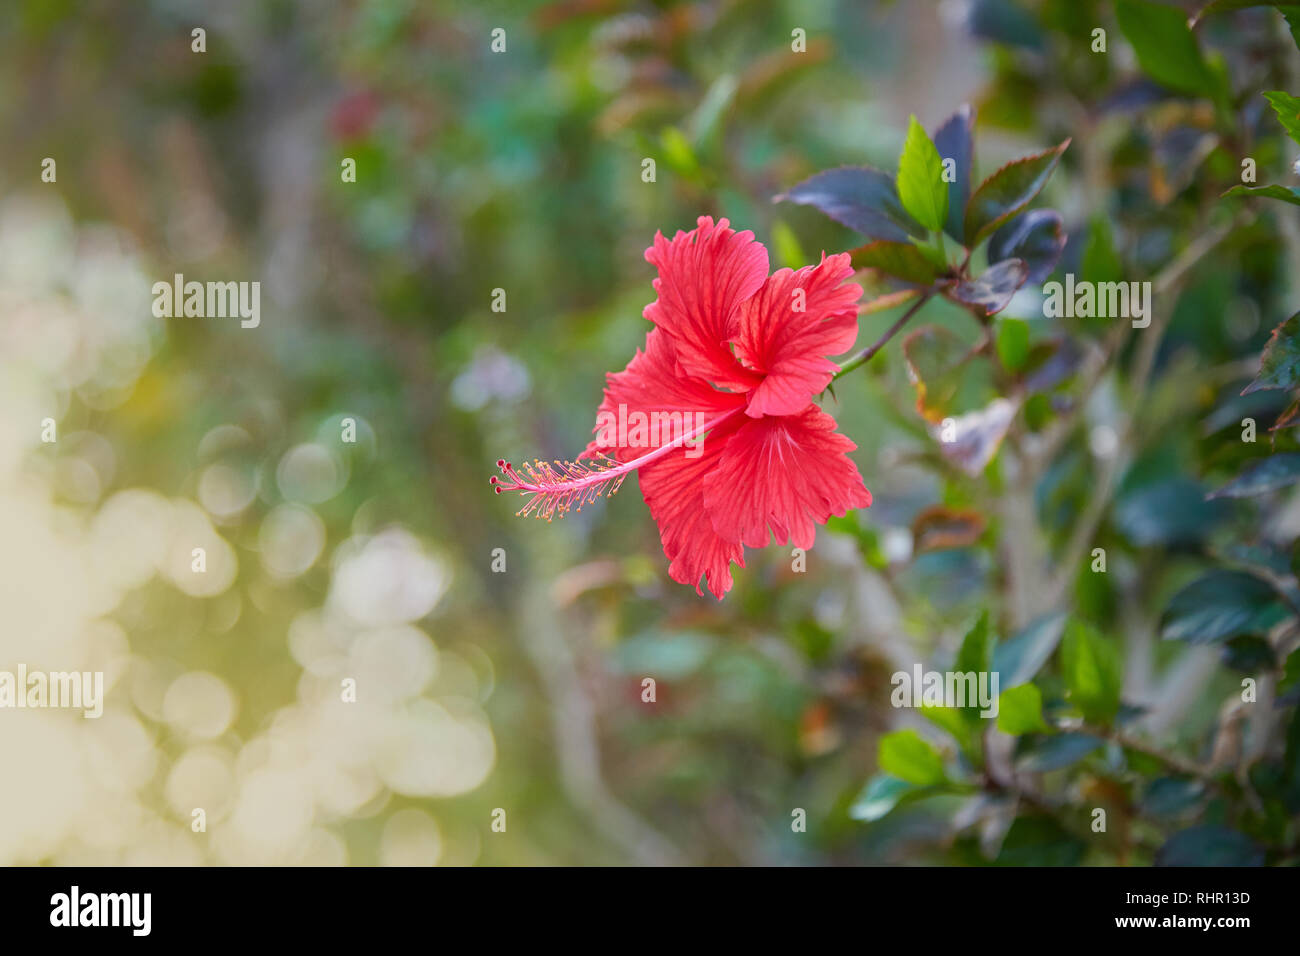 Hibiscus karkade immagini e fotografie stock ad alta risoluzione - Alamy